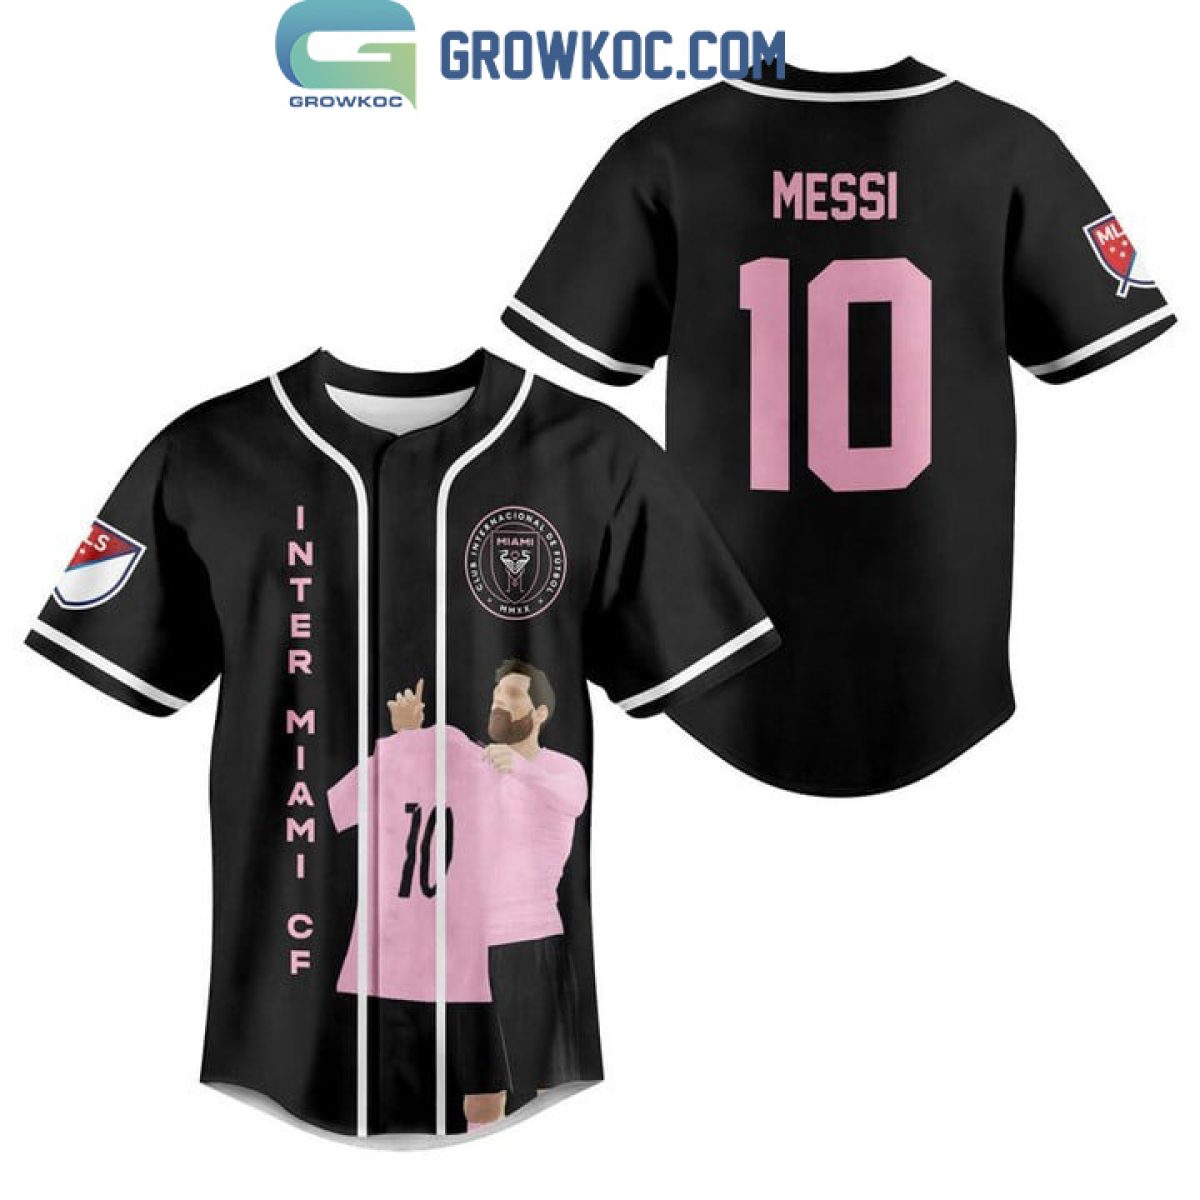 Lionel Messi Miami Personalized Baseball Jersey - Growkoc